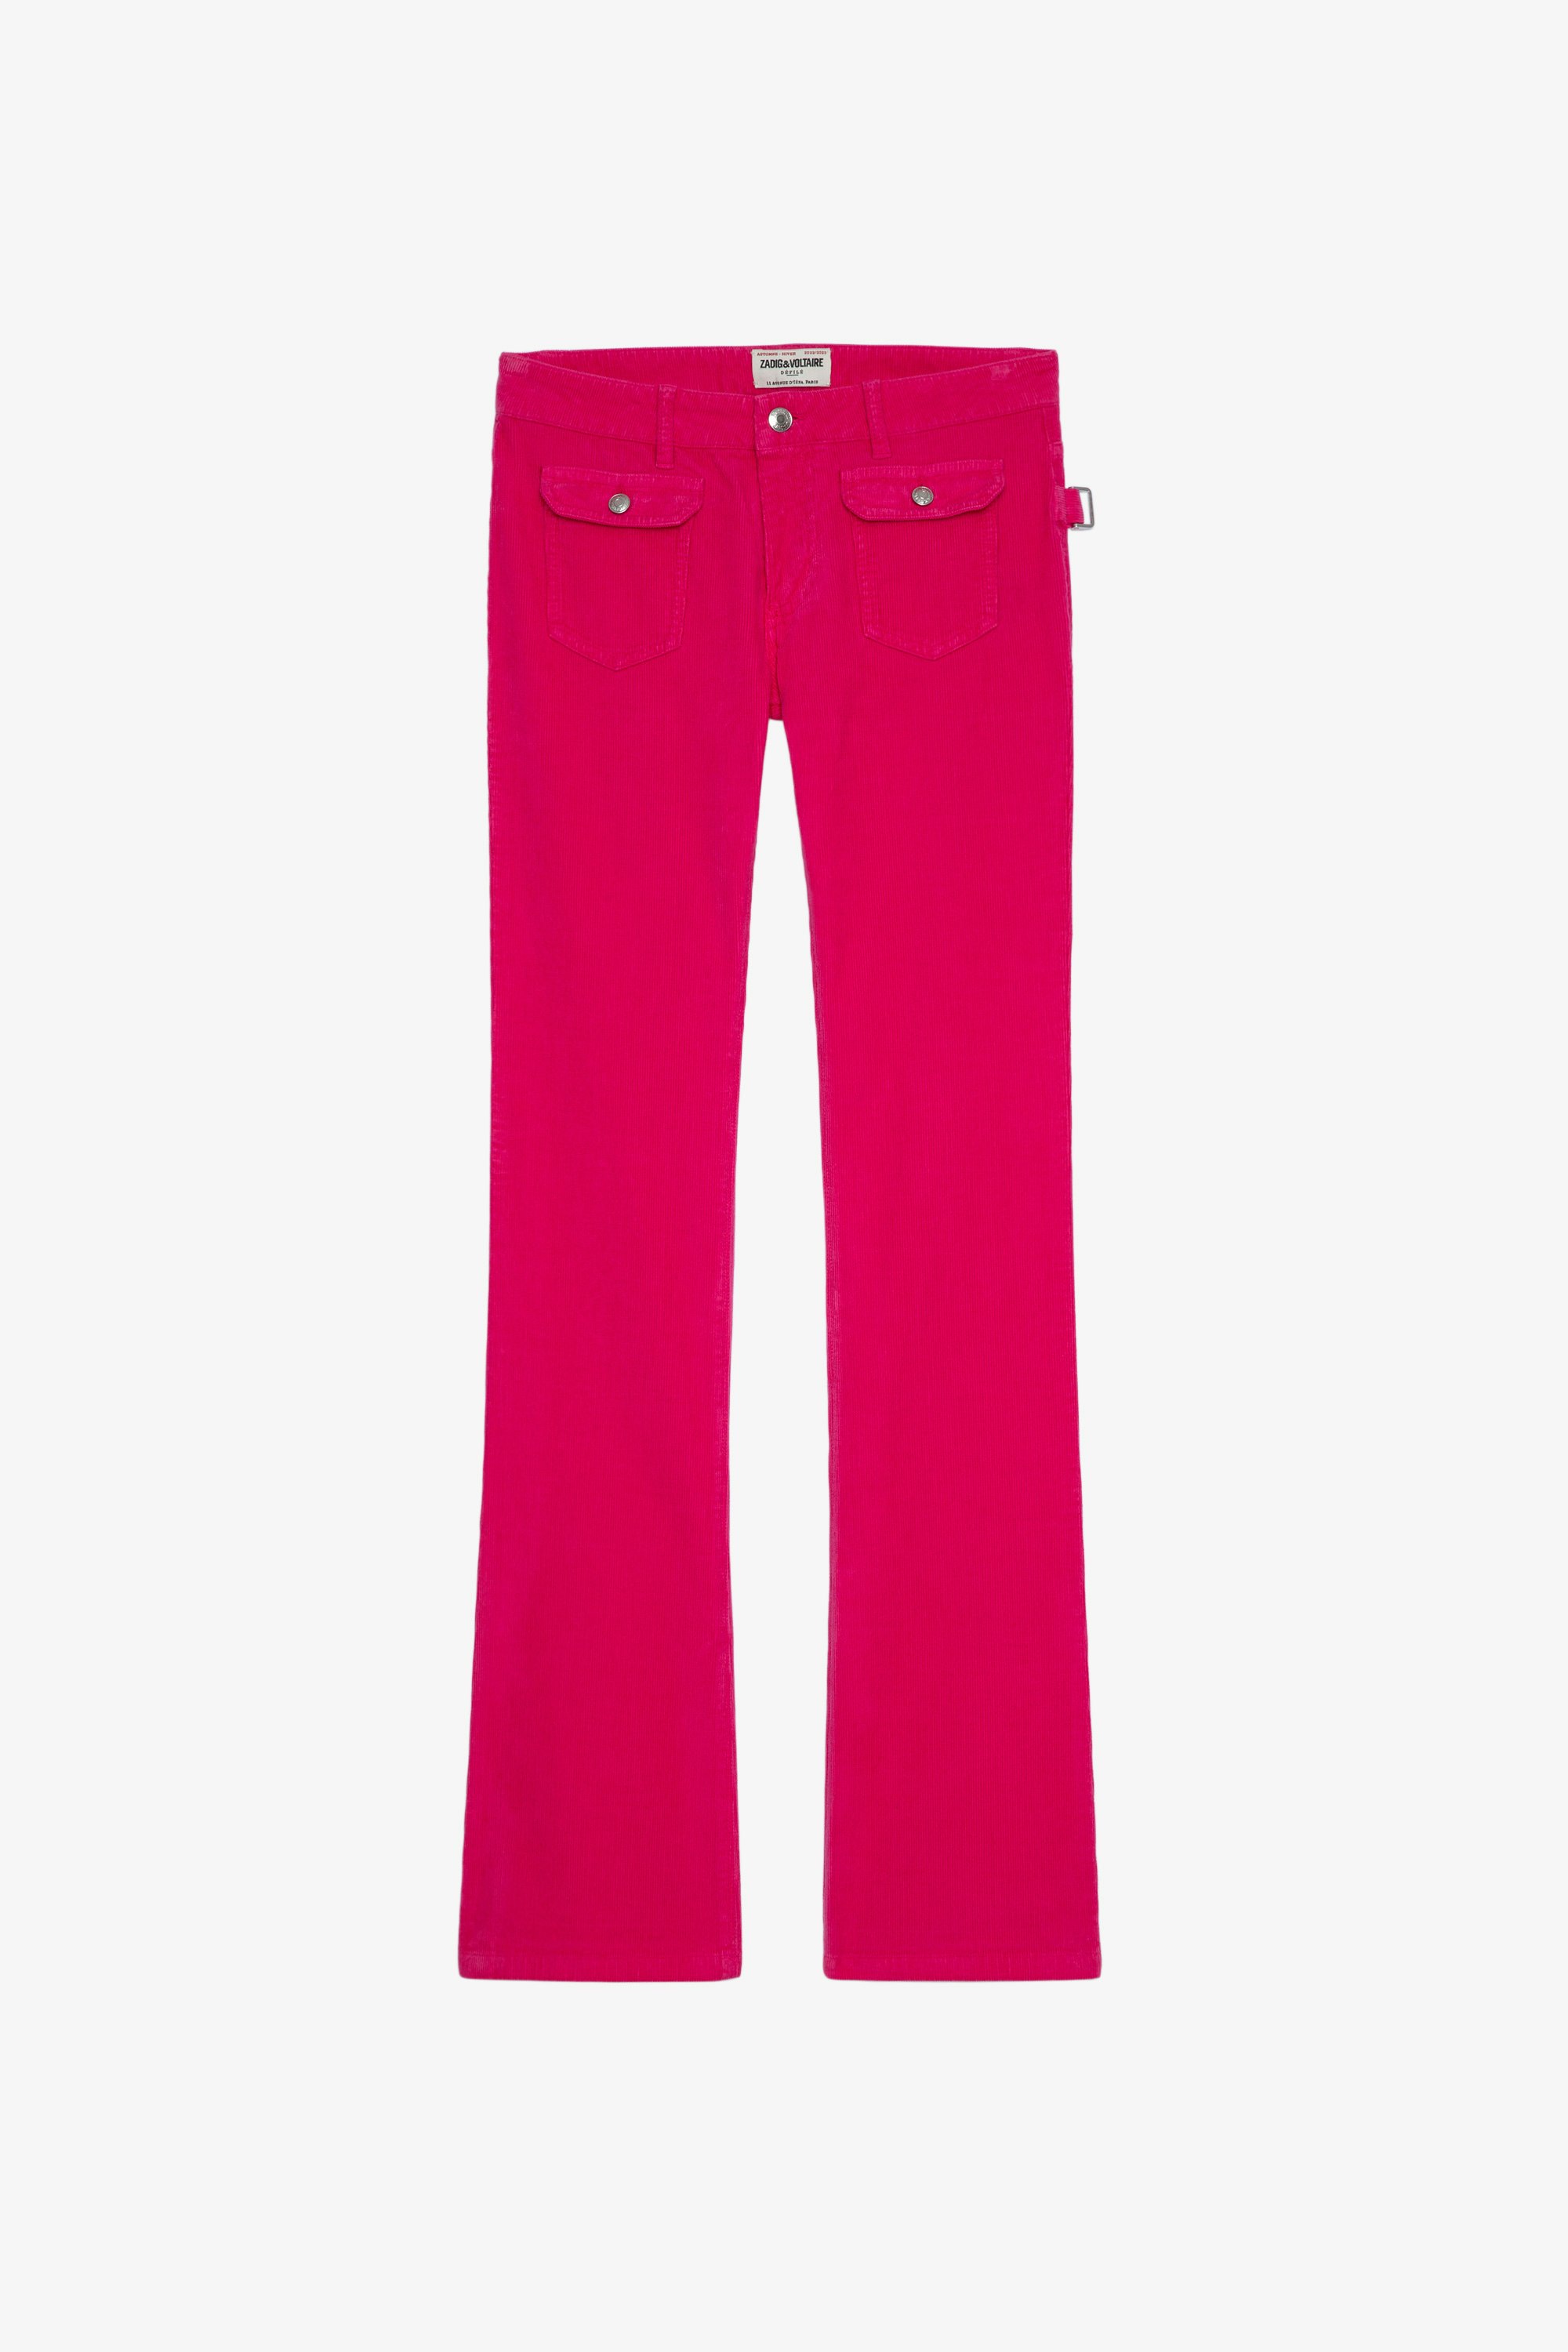 Hippie Velvet パンツ Women's Framboise corduroy wide-leg trousers